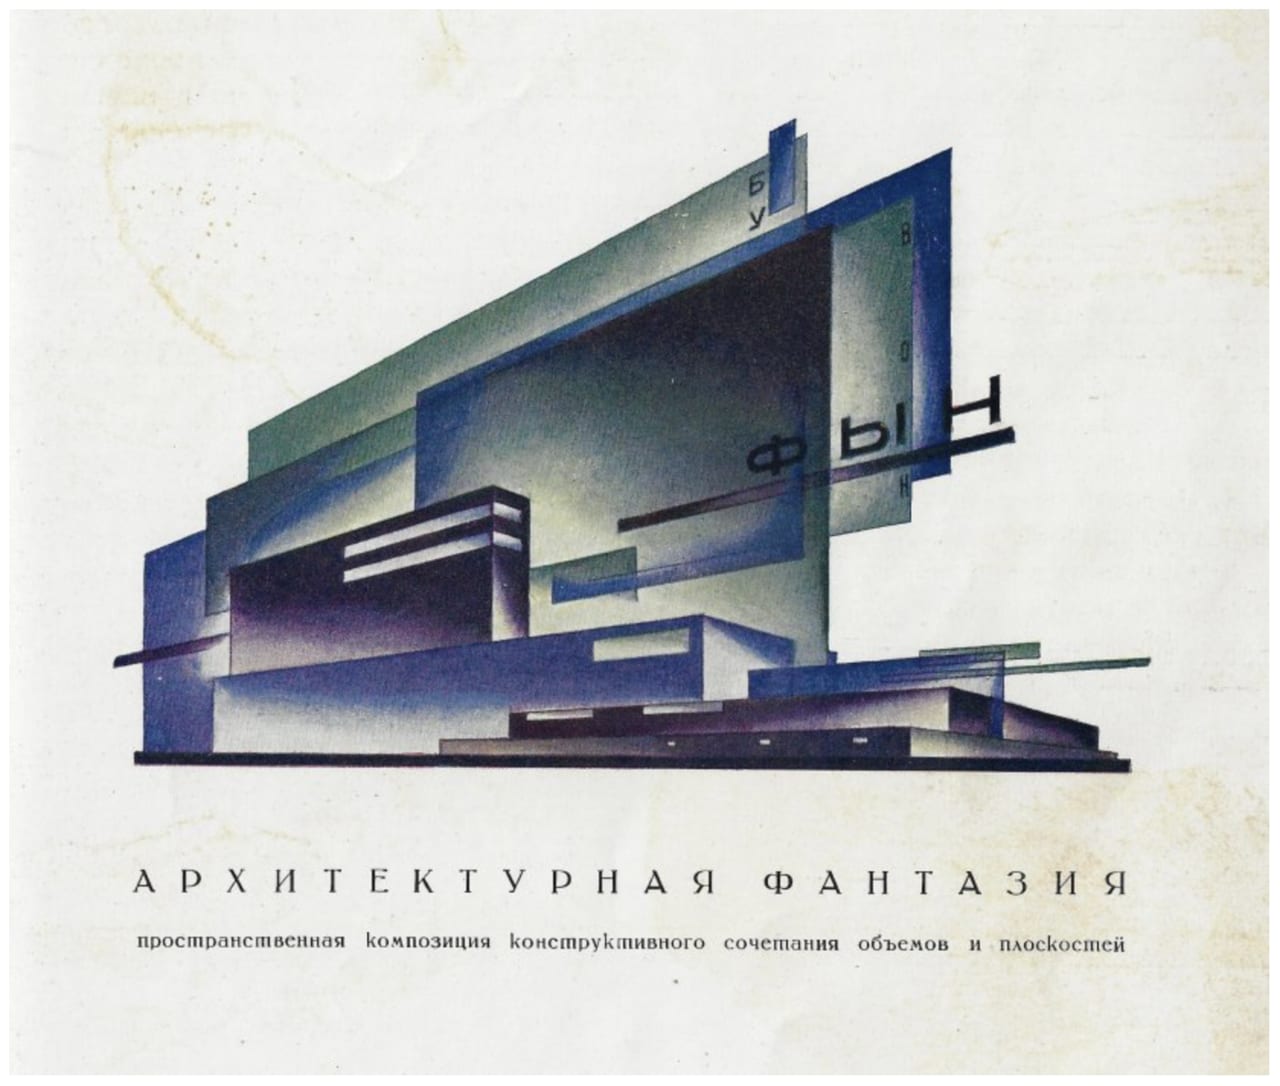 Yakov Georgievich Chernikhov, Fundamentals of Contemporary Architecture, 1930